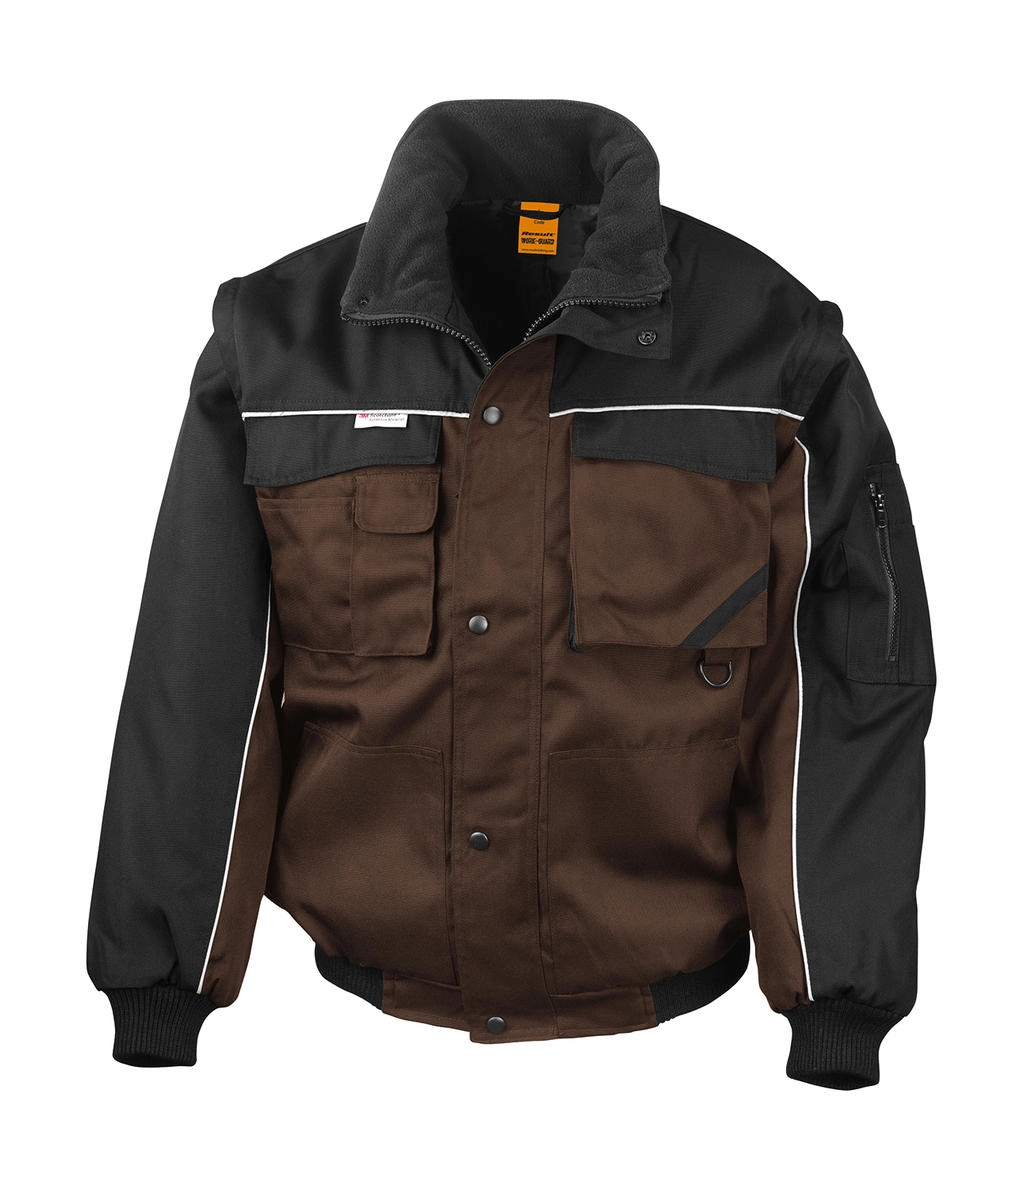 Heavy Duty Jacket zum Besticken und Bedrucken in der Farbe Tan/Black mit Ihren Logo, Schriftzug oder Motiv.